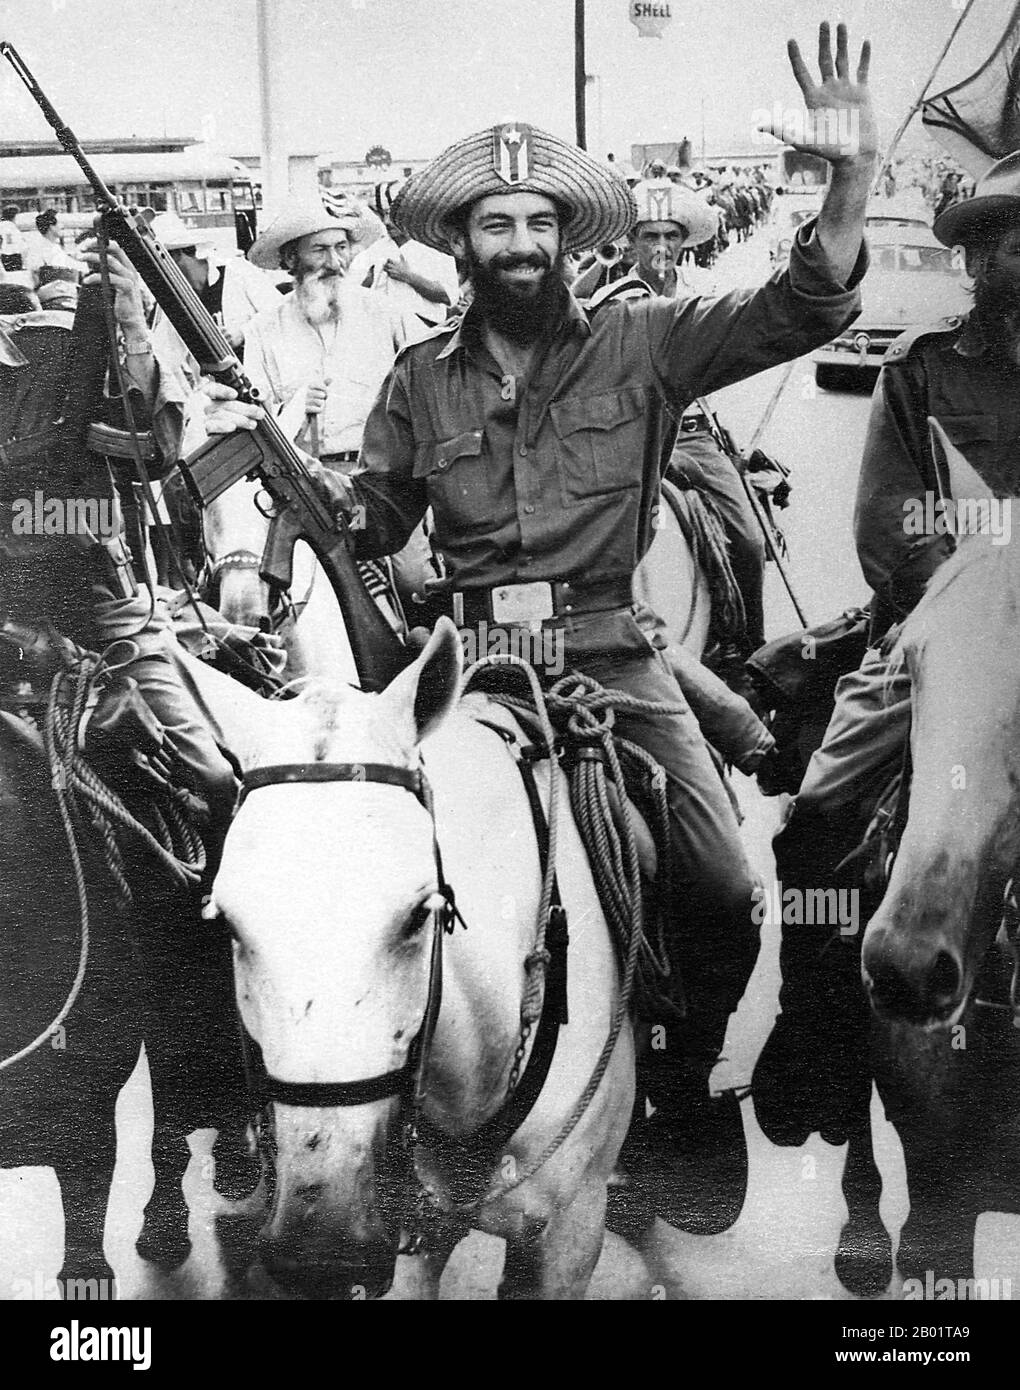 Kuba: Camilo Cienfuegos (6. Februar 1932 bis 28. Oktober 1959) nach seinem Sieg in Yaguajay, ca. Januar 1959. Camilo Cienfuegos Gorriarán war ein kubanischer Revolutionär, der in Lawton, Havanna, geboren wurde. Er wuchs in einer anarchistischen Familie auf, die Spanien vor dem Spanischen Bürgerkrieg verlassen hatte, und wurde neben Fidel Castro, Che Guevara, Juan Almeida Bosque und Raúl Castro zu einer Schlüsselfigur der kubanischen Revolution; er galt als zweiter unter der revolutionären Führung nach Fidel Castro. Während des Rückflugs von Camagüey verschwand sein Flugzeug über der Straße von Florida und er wurde als tot angesehen. Stockfoto